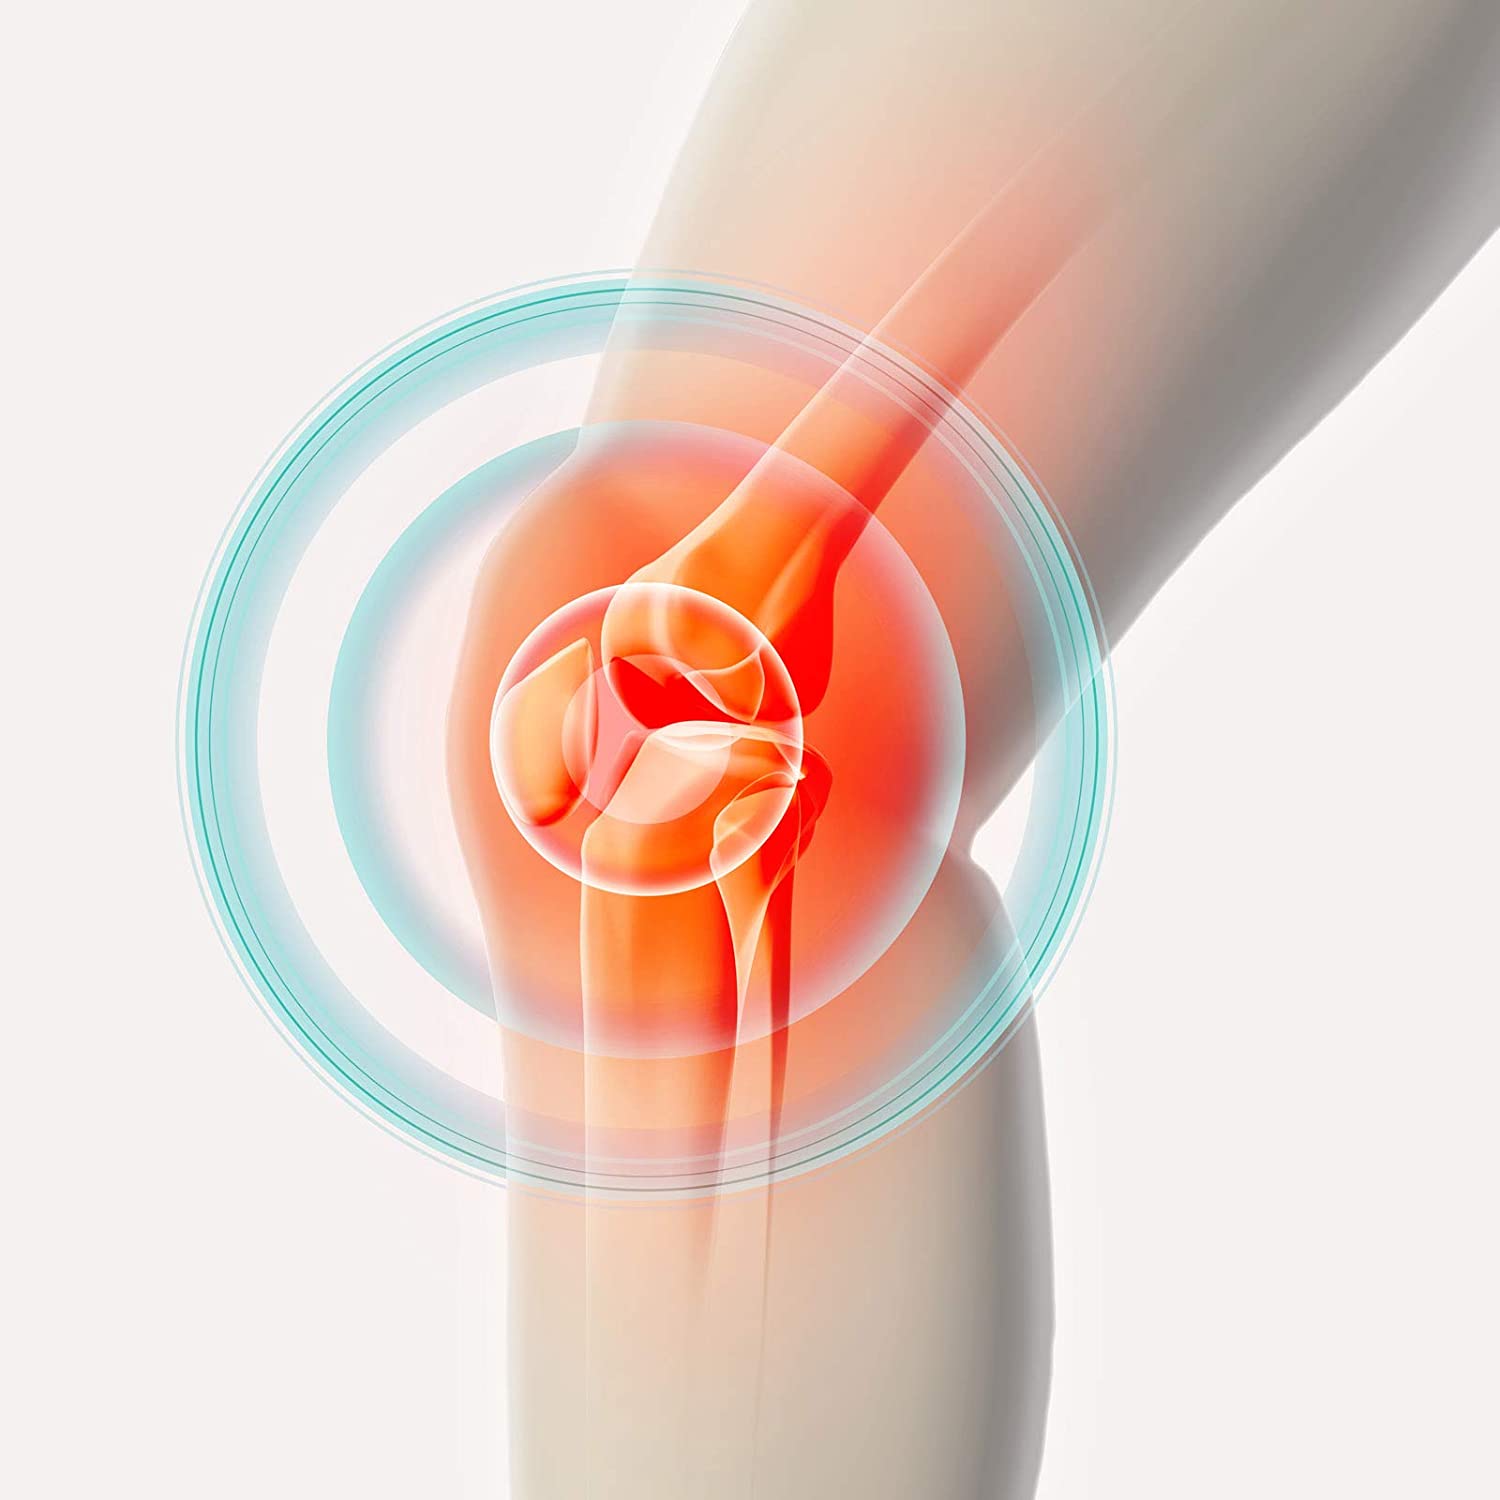 TESMED Knee 2 électrodes de qualité supérieure pour le genou, pas besoin de gel
